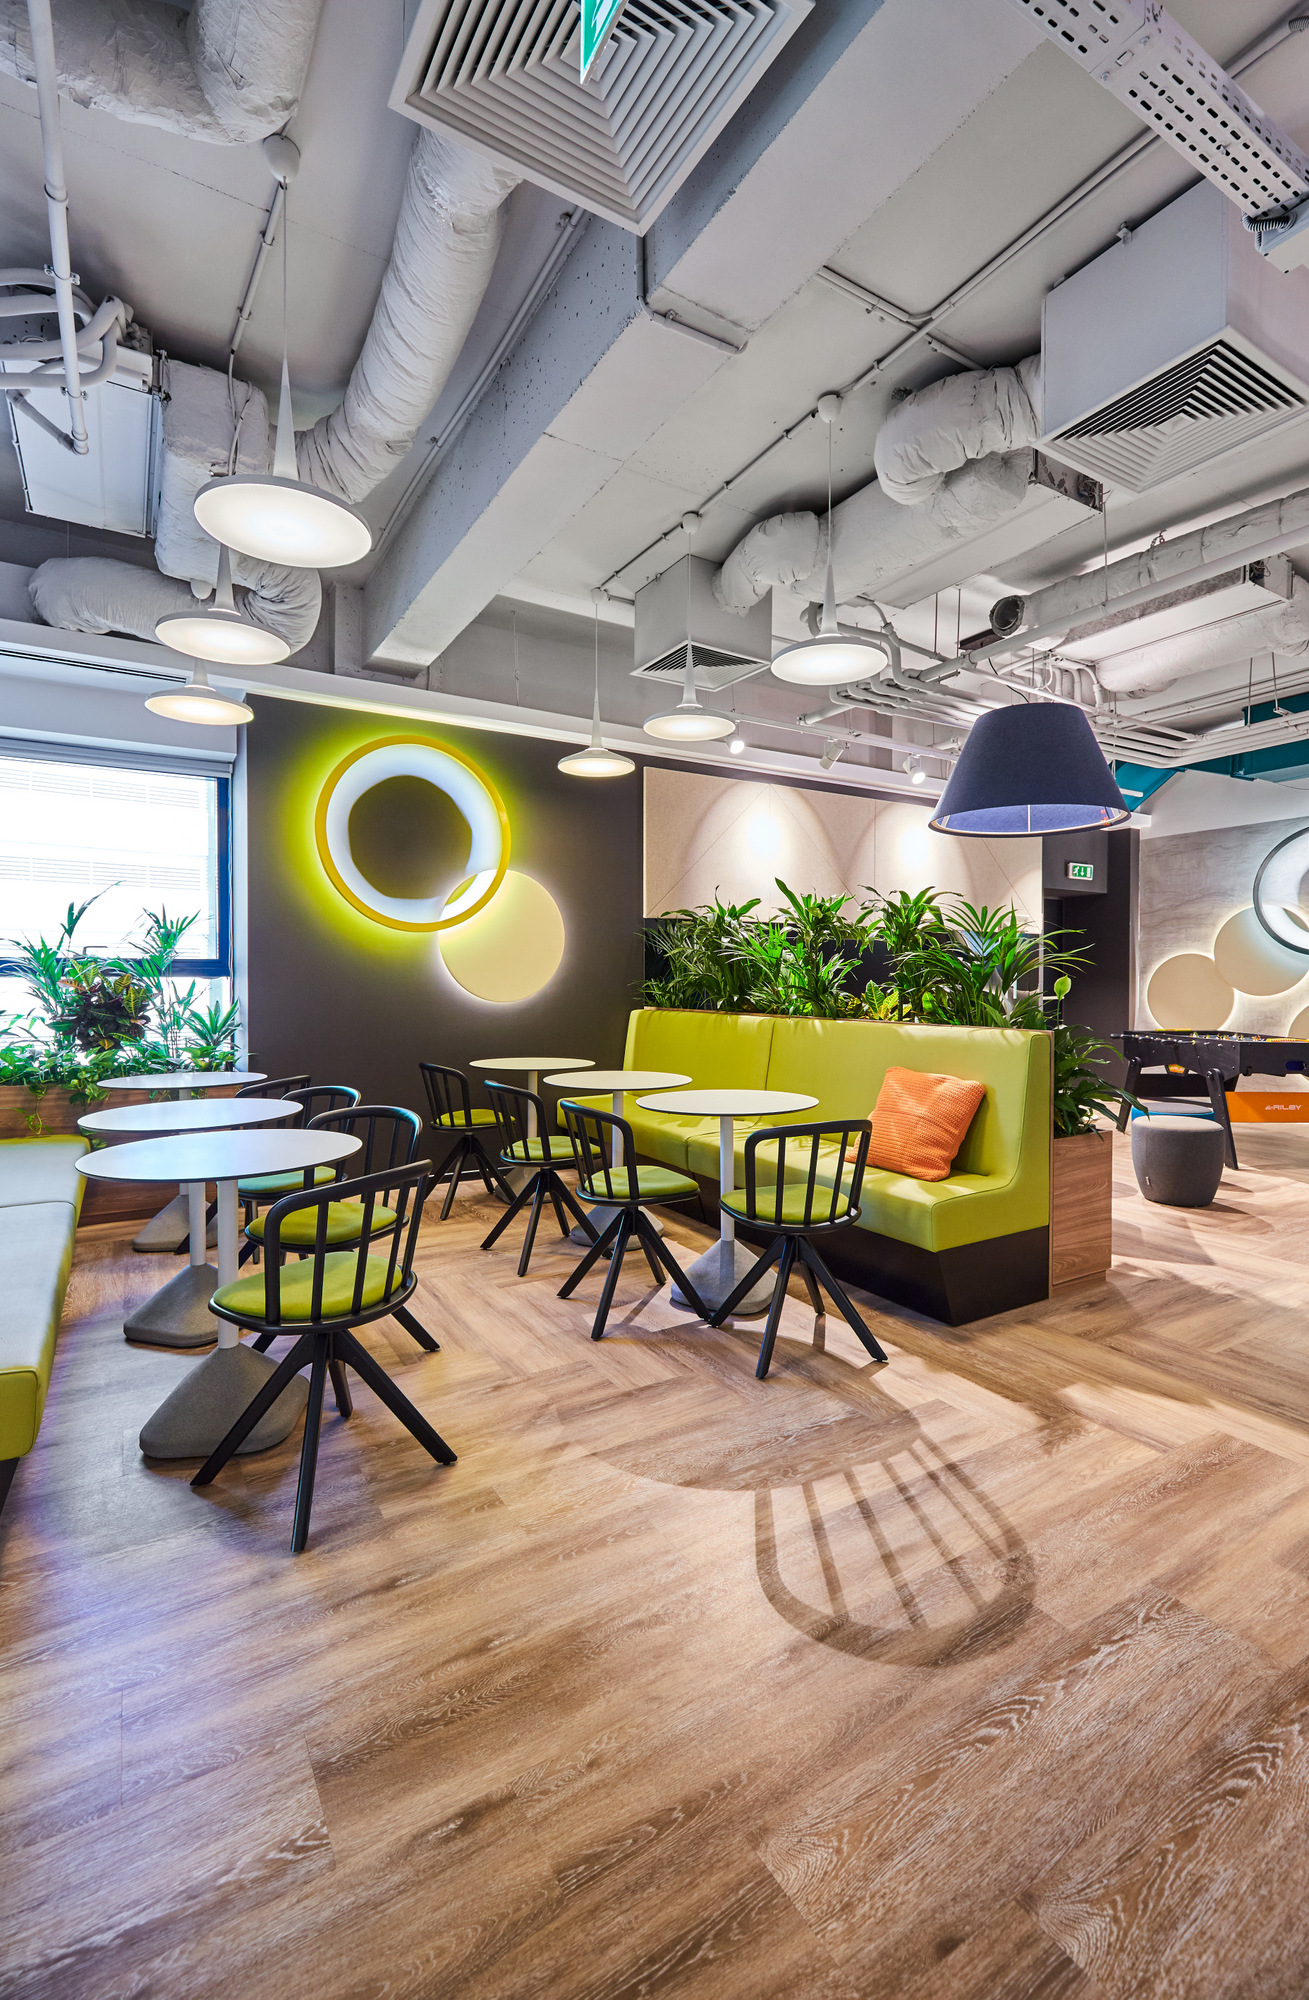 Accenture(アクセンチュア)のオフィス - ルーマニア、ブカレストのコミュニケーションスペース